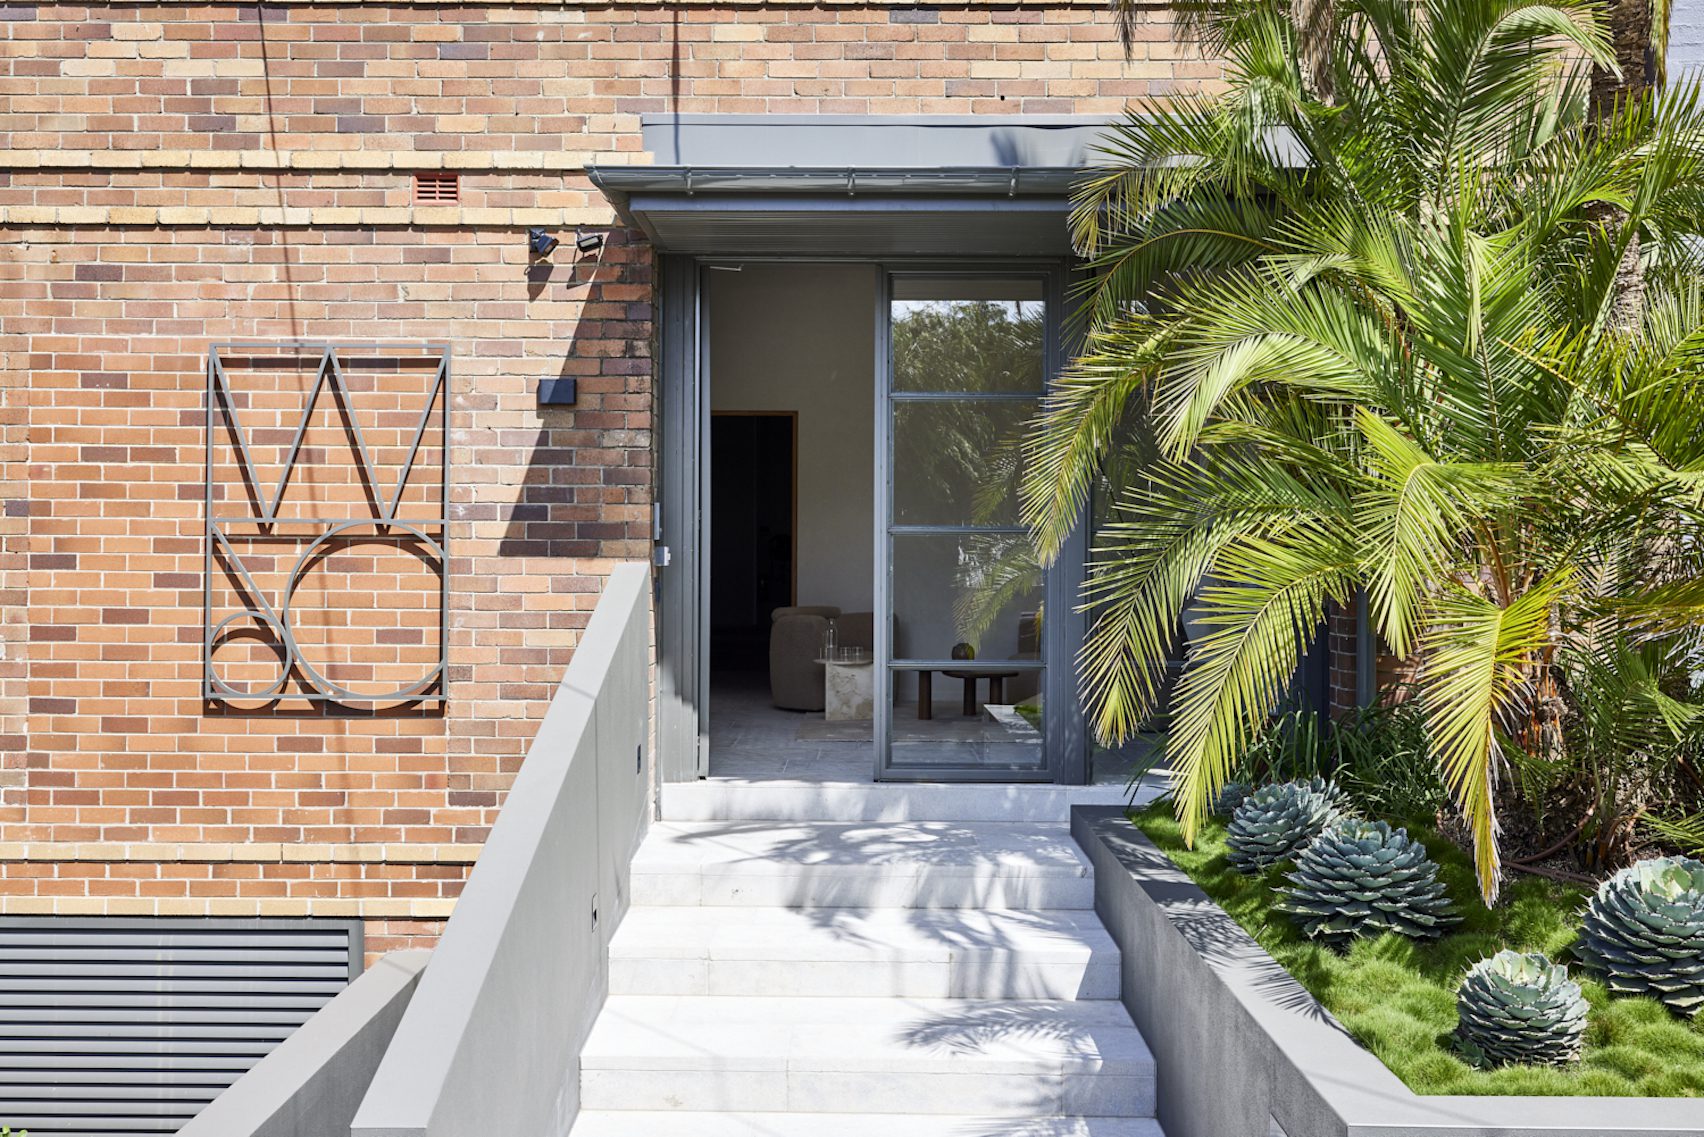 Daniel Boddam将悉尼仓库改造成平静而充满植物的办公室|ART-Arrakis | 建筑室内设计的创新与灵感